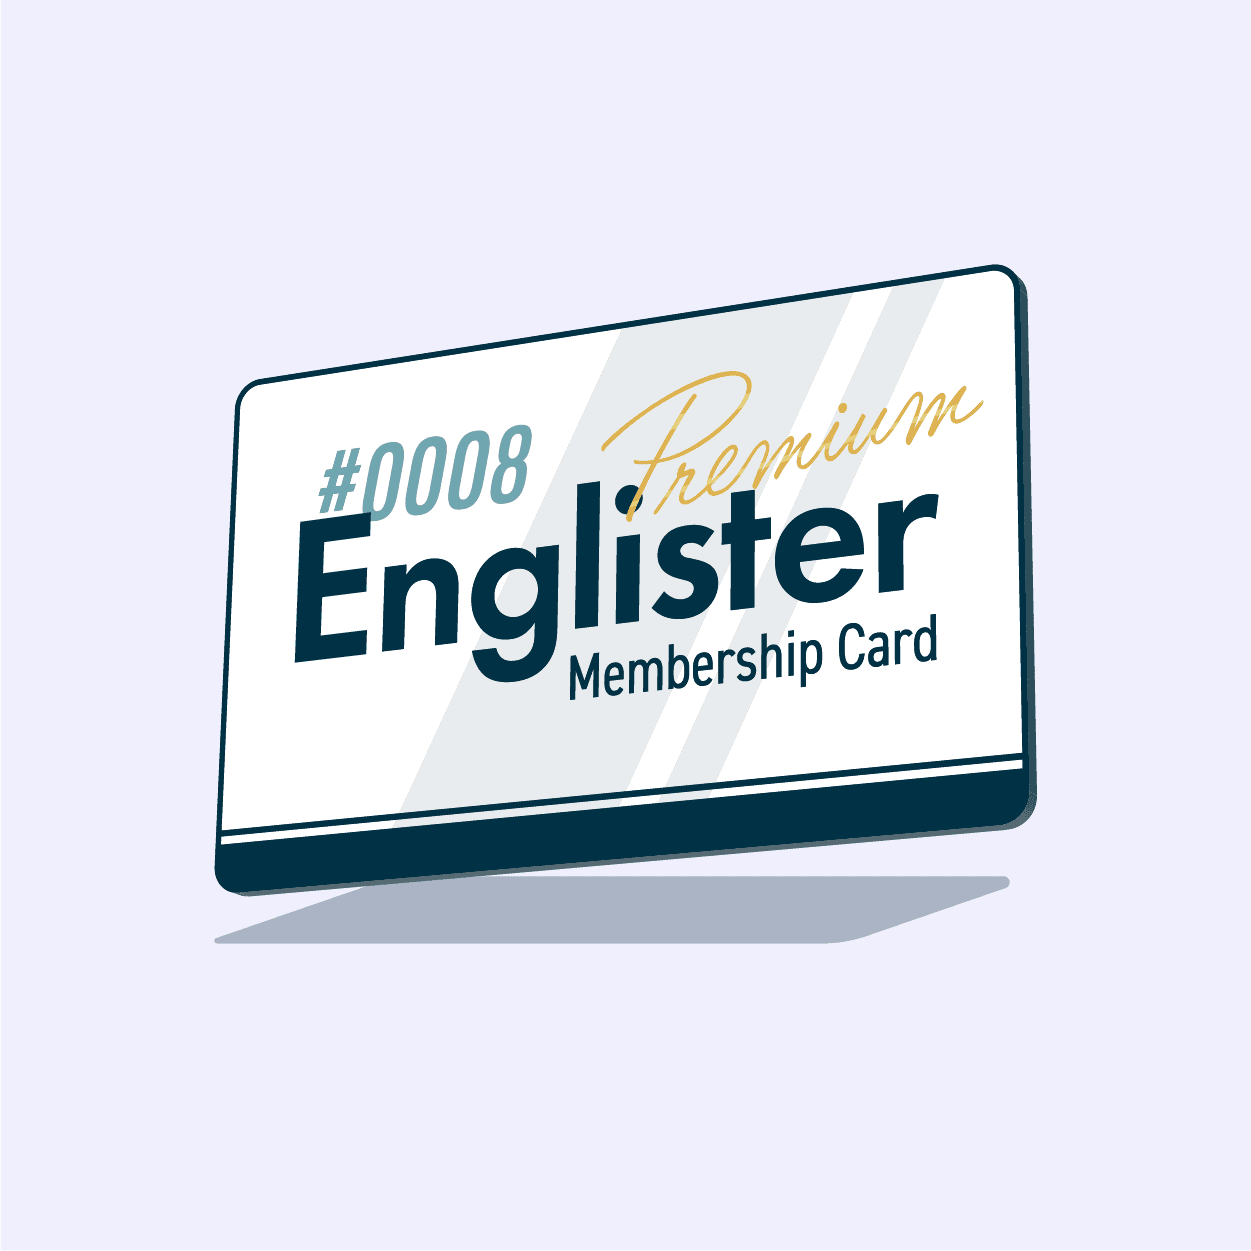 Englister Premium Membership #0008